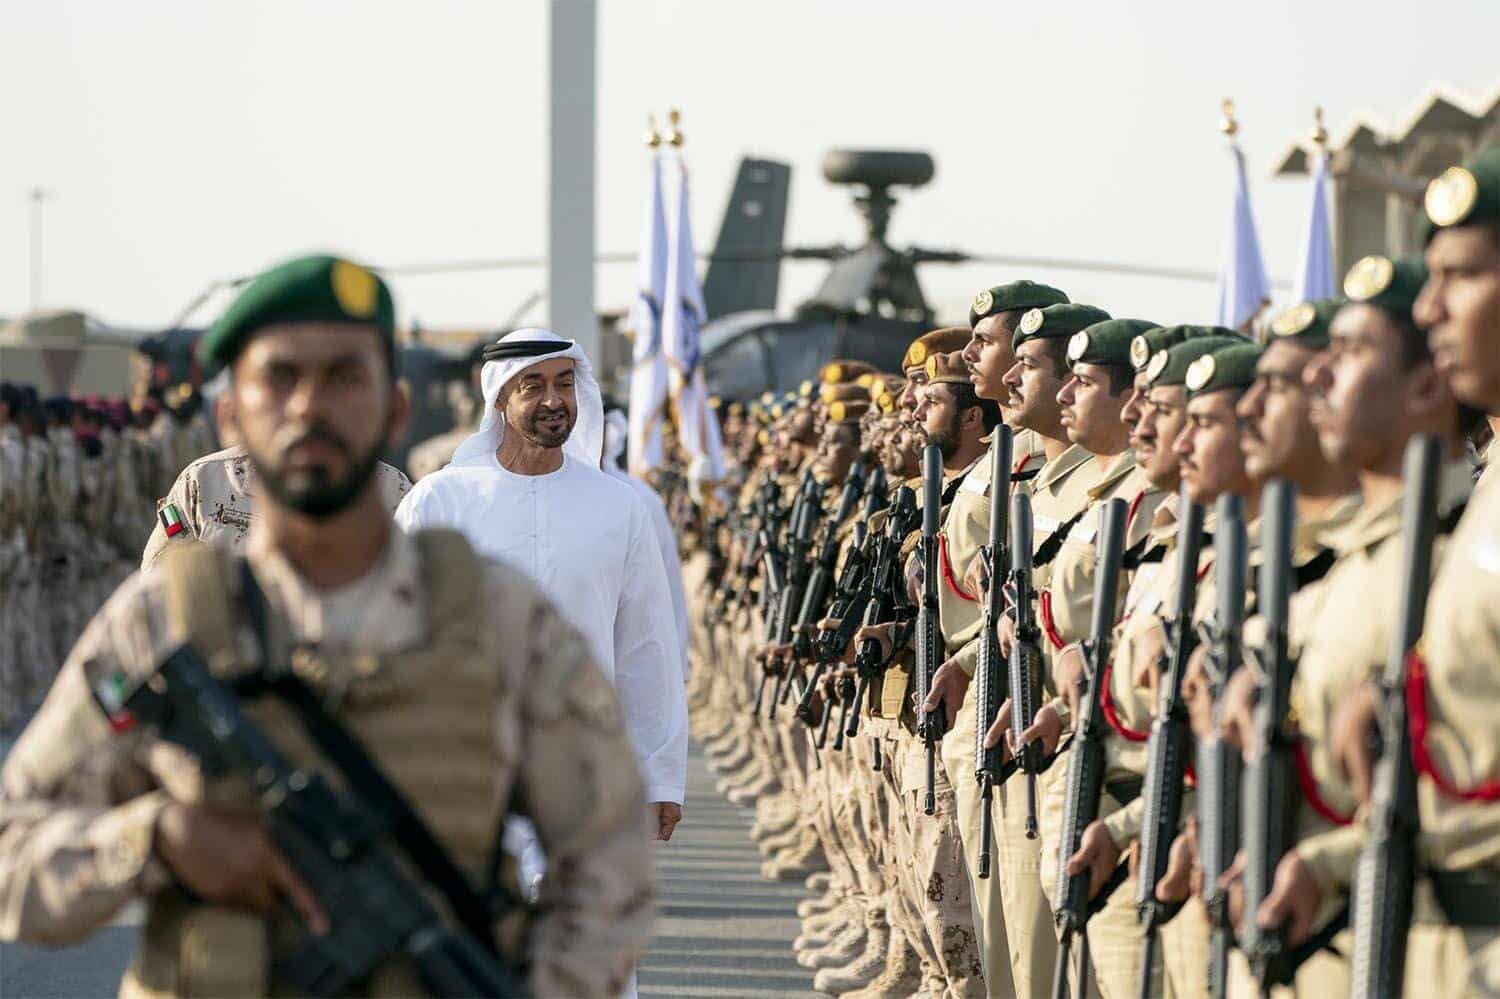 معهد بروكينغز للسلام يتهم الإمارات بالوقوف خلف تفكيك دولة اليمن والدفع نحو تقسيمها watanserb.com